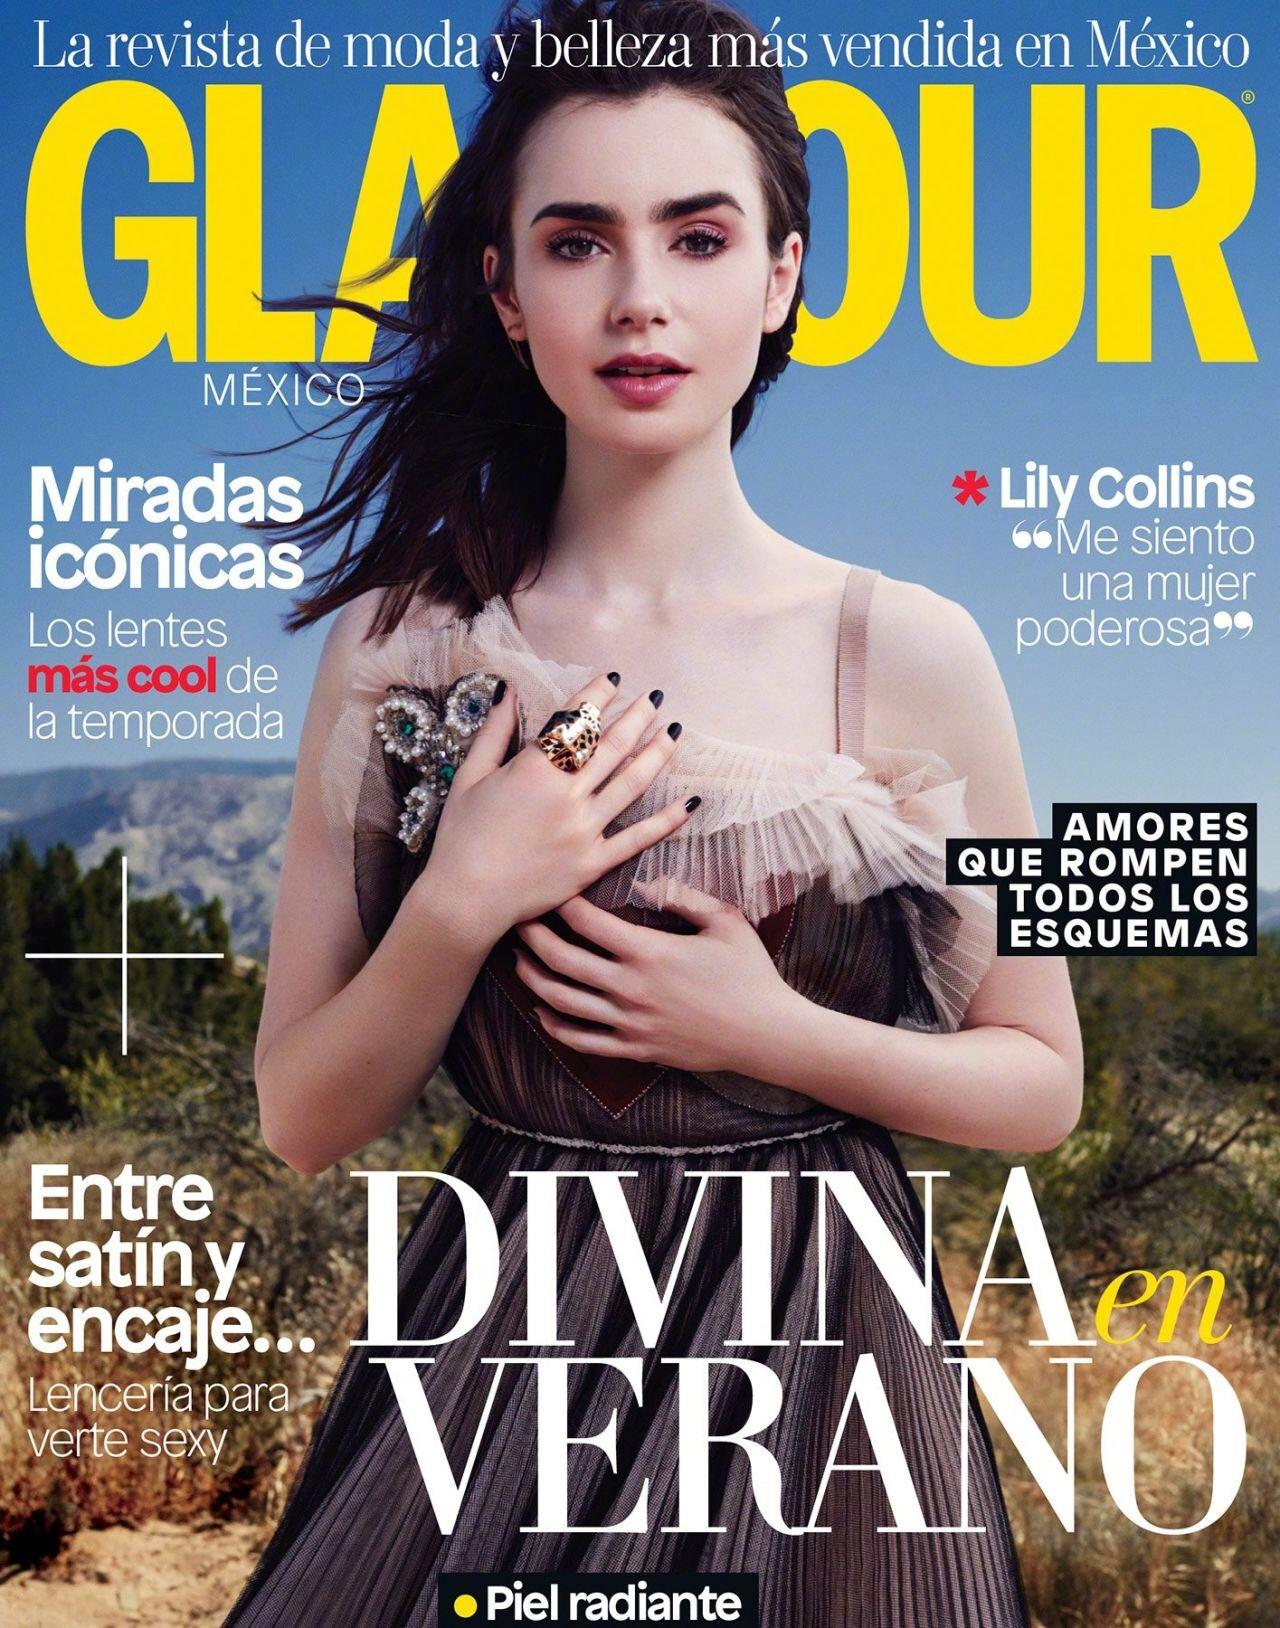 杂志大片 墨西哥版《Glamour》七月刊 粗眉小公主莉莉·柯林斯​​​​ Glamour Magazine Mexico July 2017 : Lily Collins,杂志大片 墨西哥版《Glamour》七月刊 粗眉小公主莉莉·柯林斯​​​​ Glamour Magazine Mexico July 2017 : Lily Collins